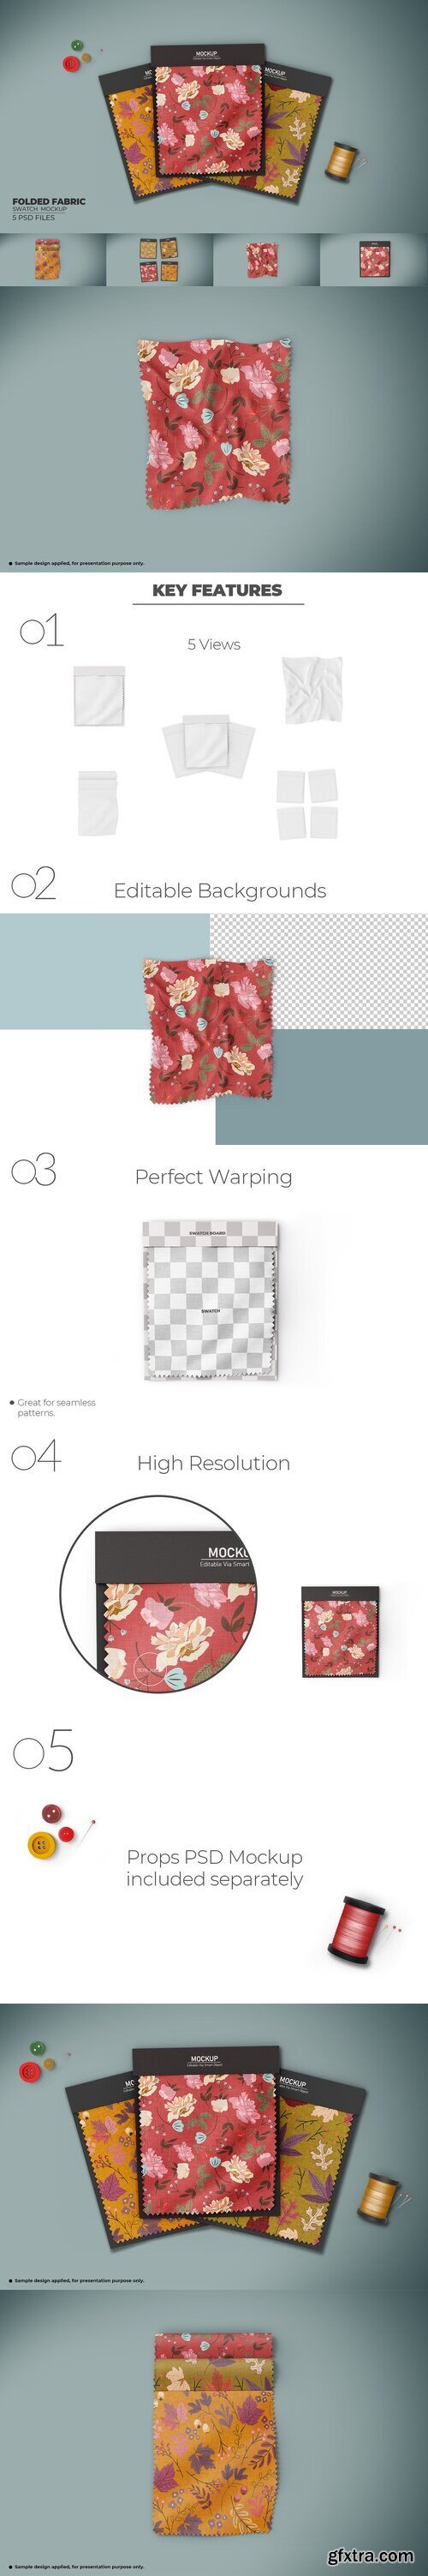 CreativeMarket - Folded Fabric Swatches Mockups Set 7485074